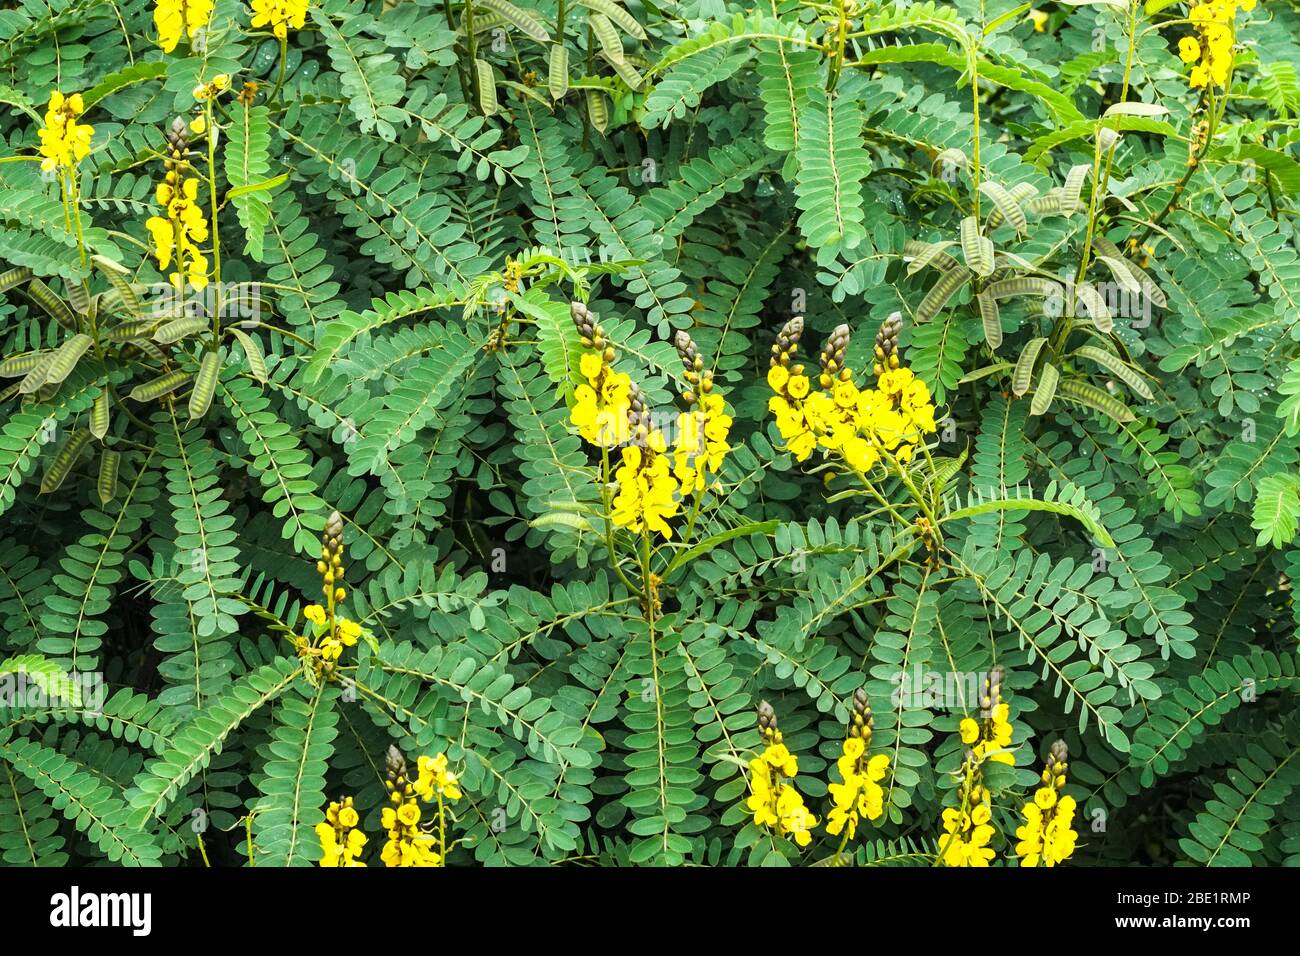 Senna didymobotrya, Erdnussbutter Cassia, African senna, Popcorn senna,  Kandelaber Baum Nahaufnahme der gelben Blüten, Schoten und Blätter, eine  einheimische Pflanze Stockfotografie - Alamy